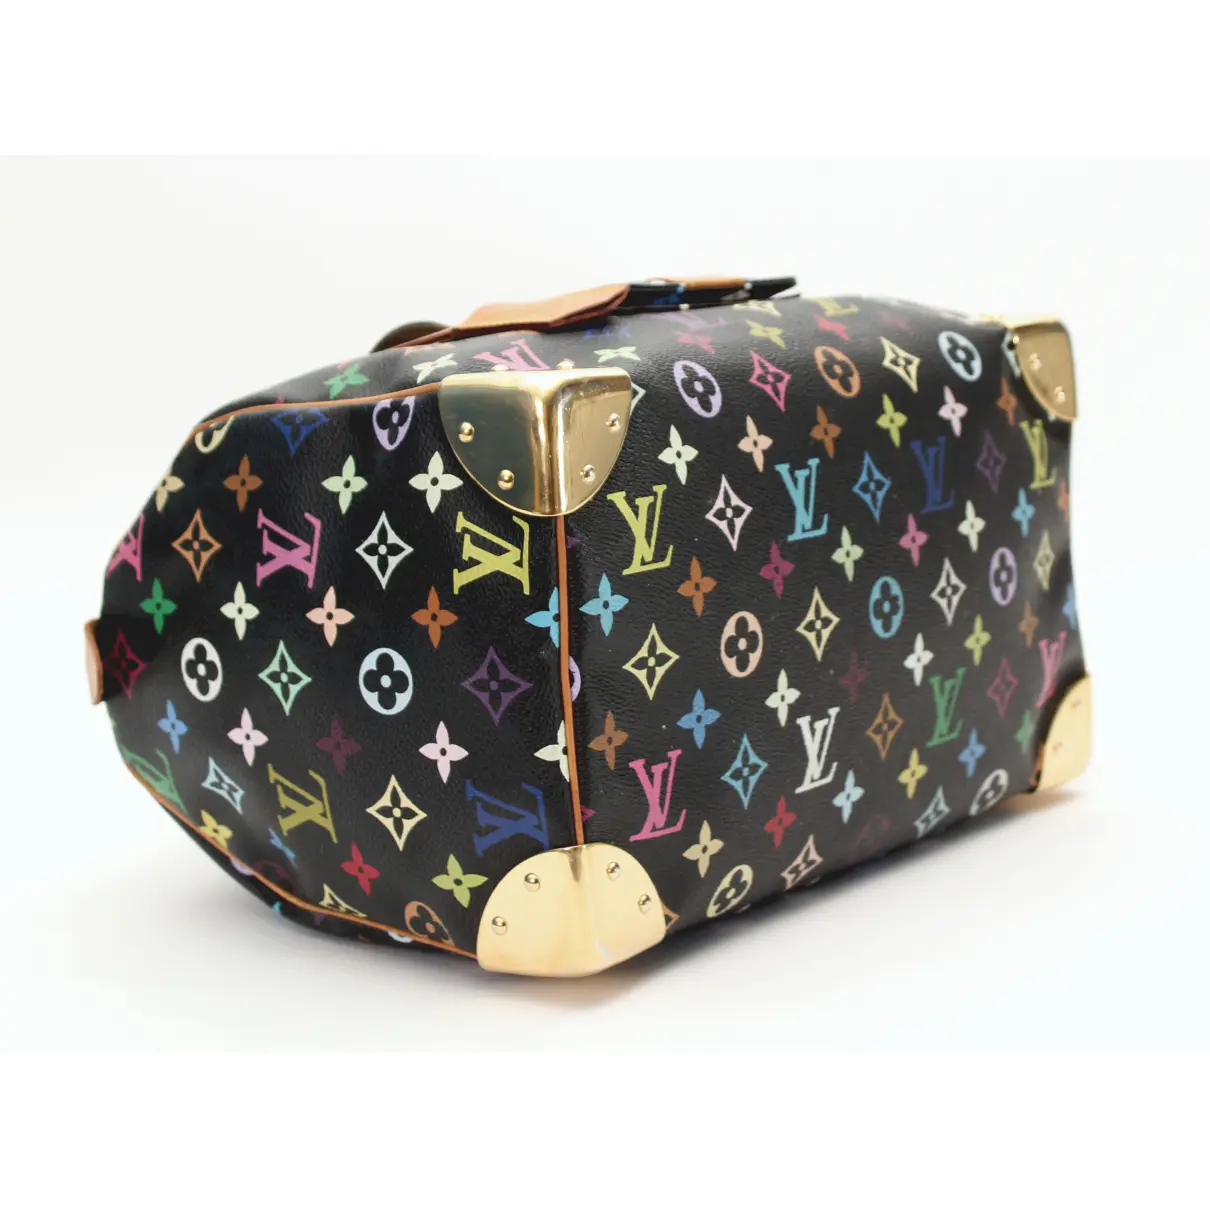 Buy Louis Vuitton Speedy cloth handbag online - Vintage